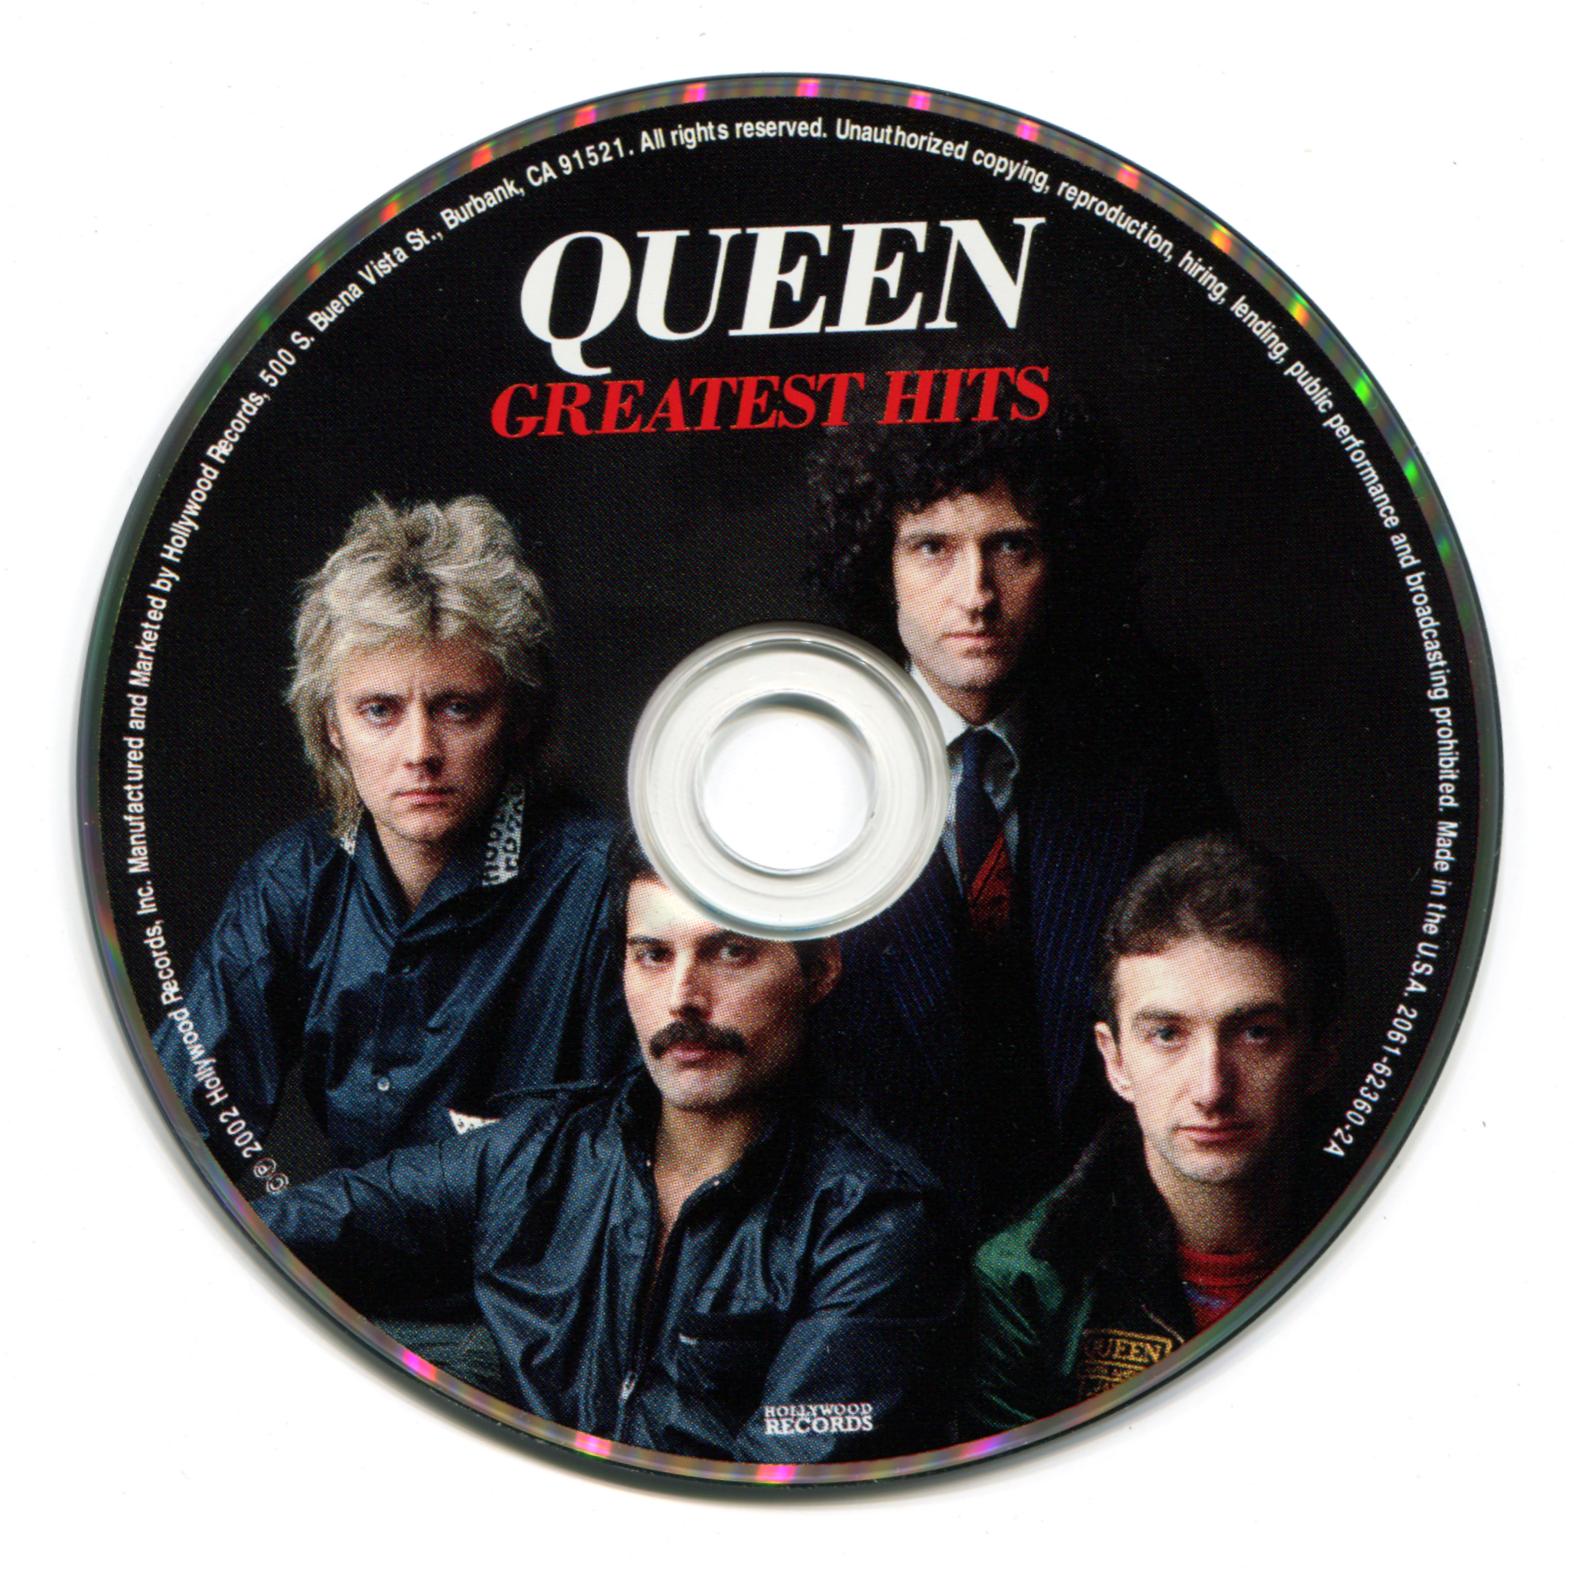 Queen best hits. Группа Queen 2000. Группа Квин 2002. Queen Greatest Hits 2 обложка. Queen Greatest Hits обложка.